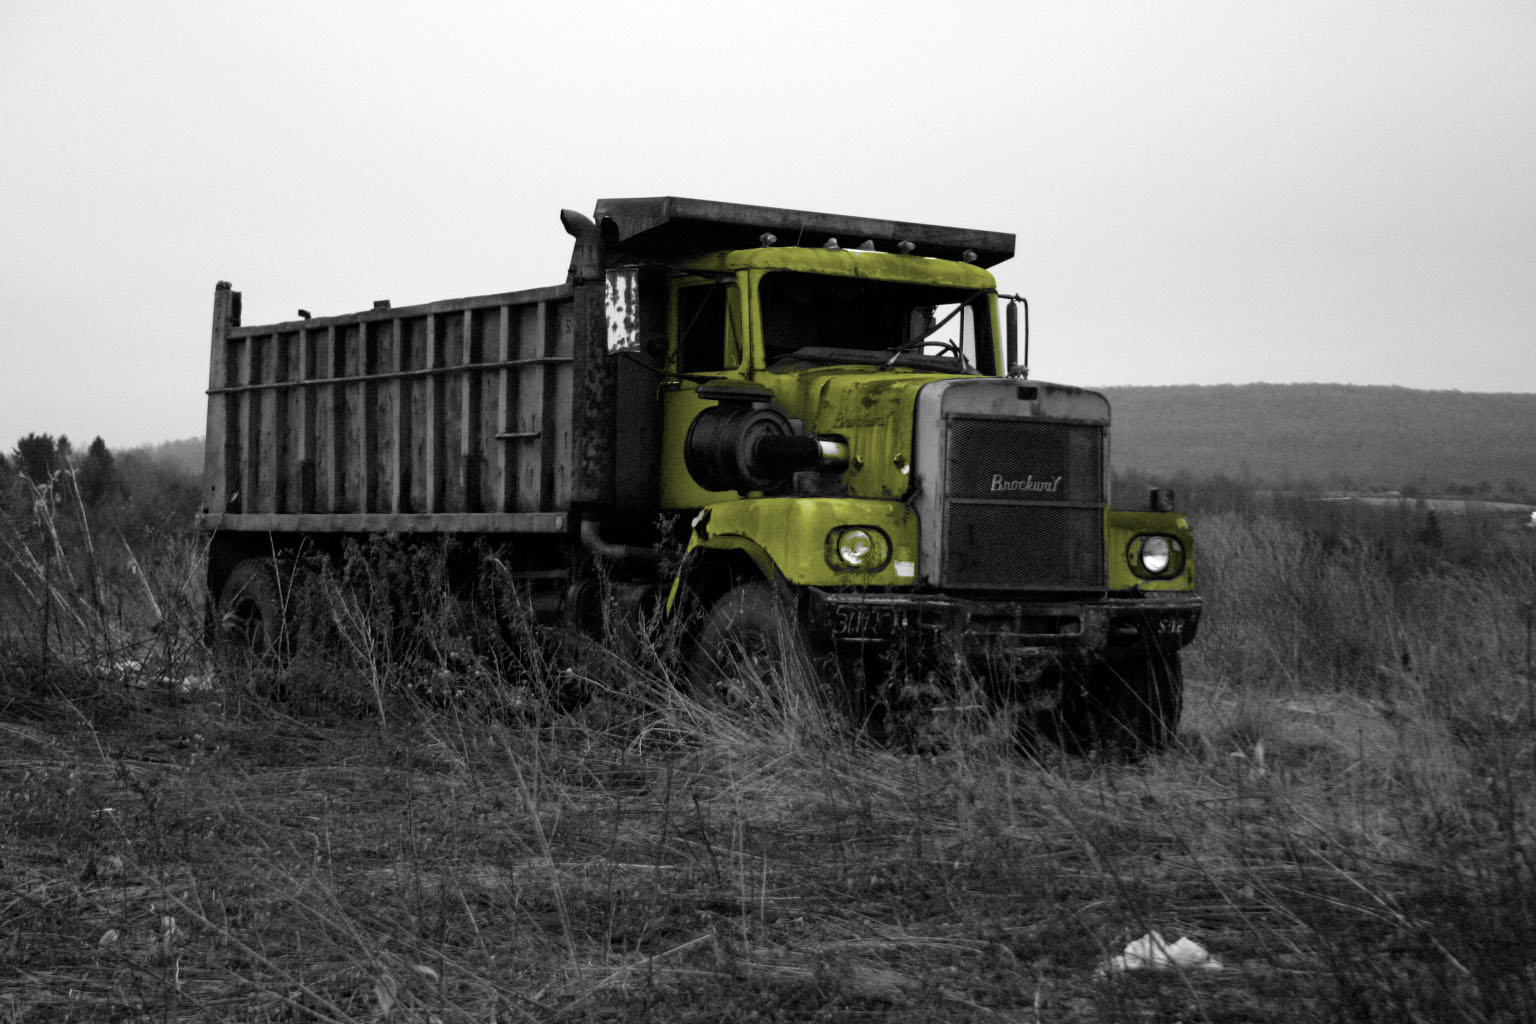 an old dump truck sitting in a field